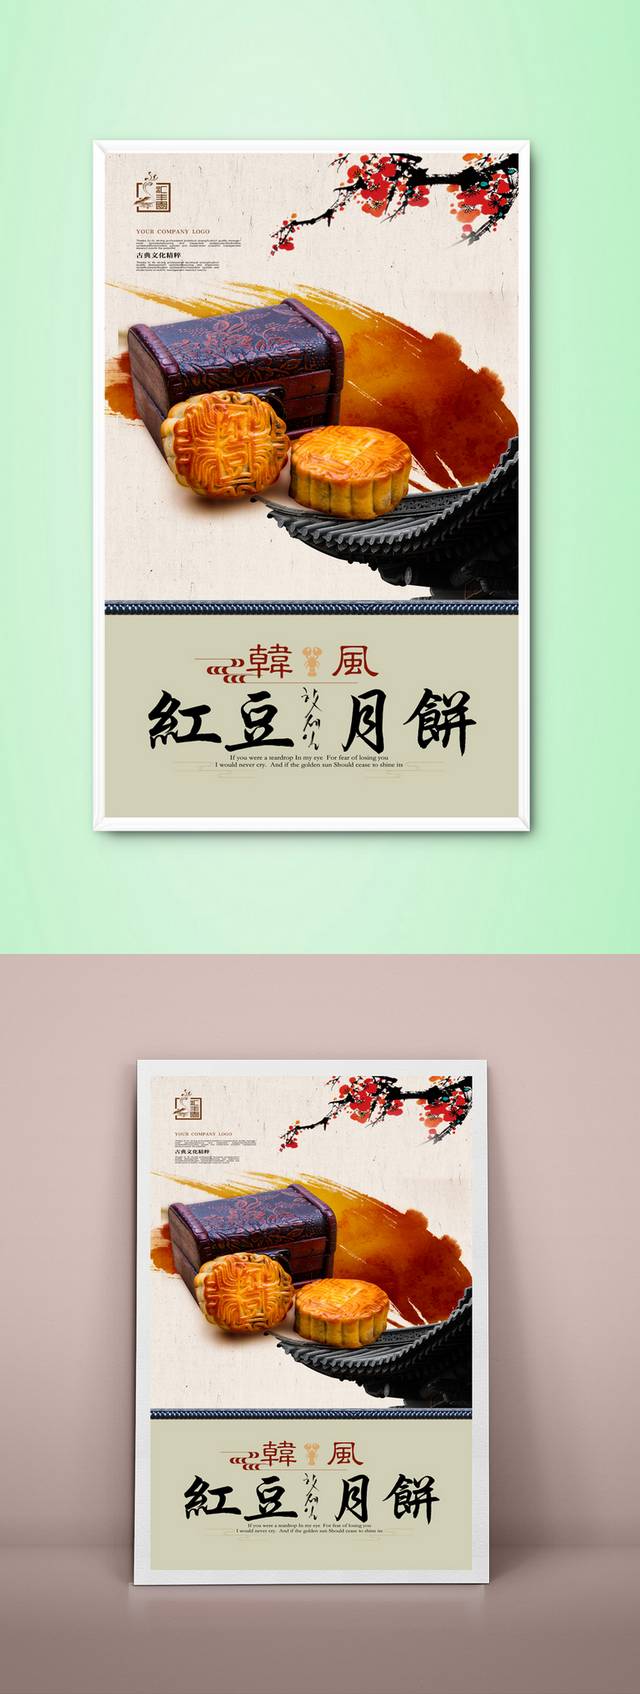 古典中国风月饼宣传海报设计